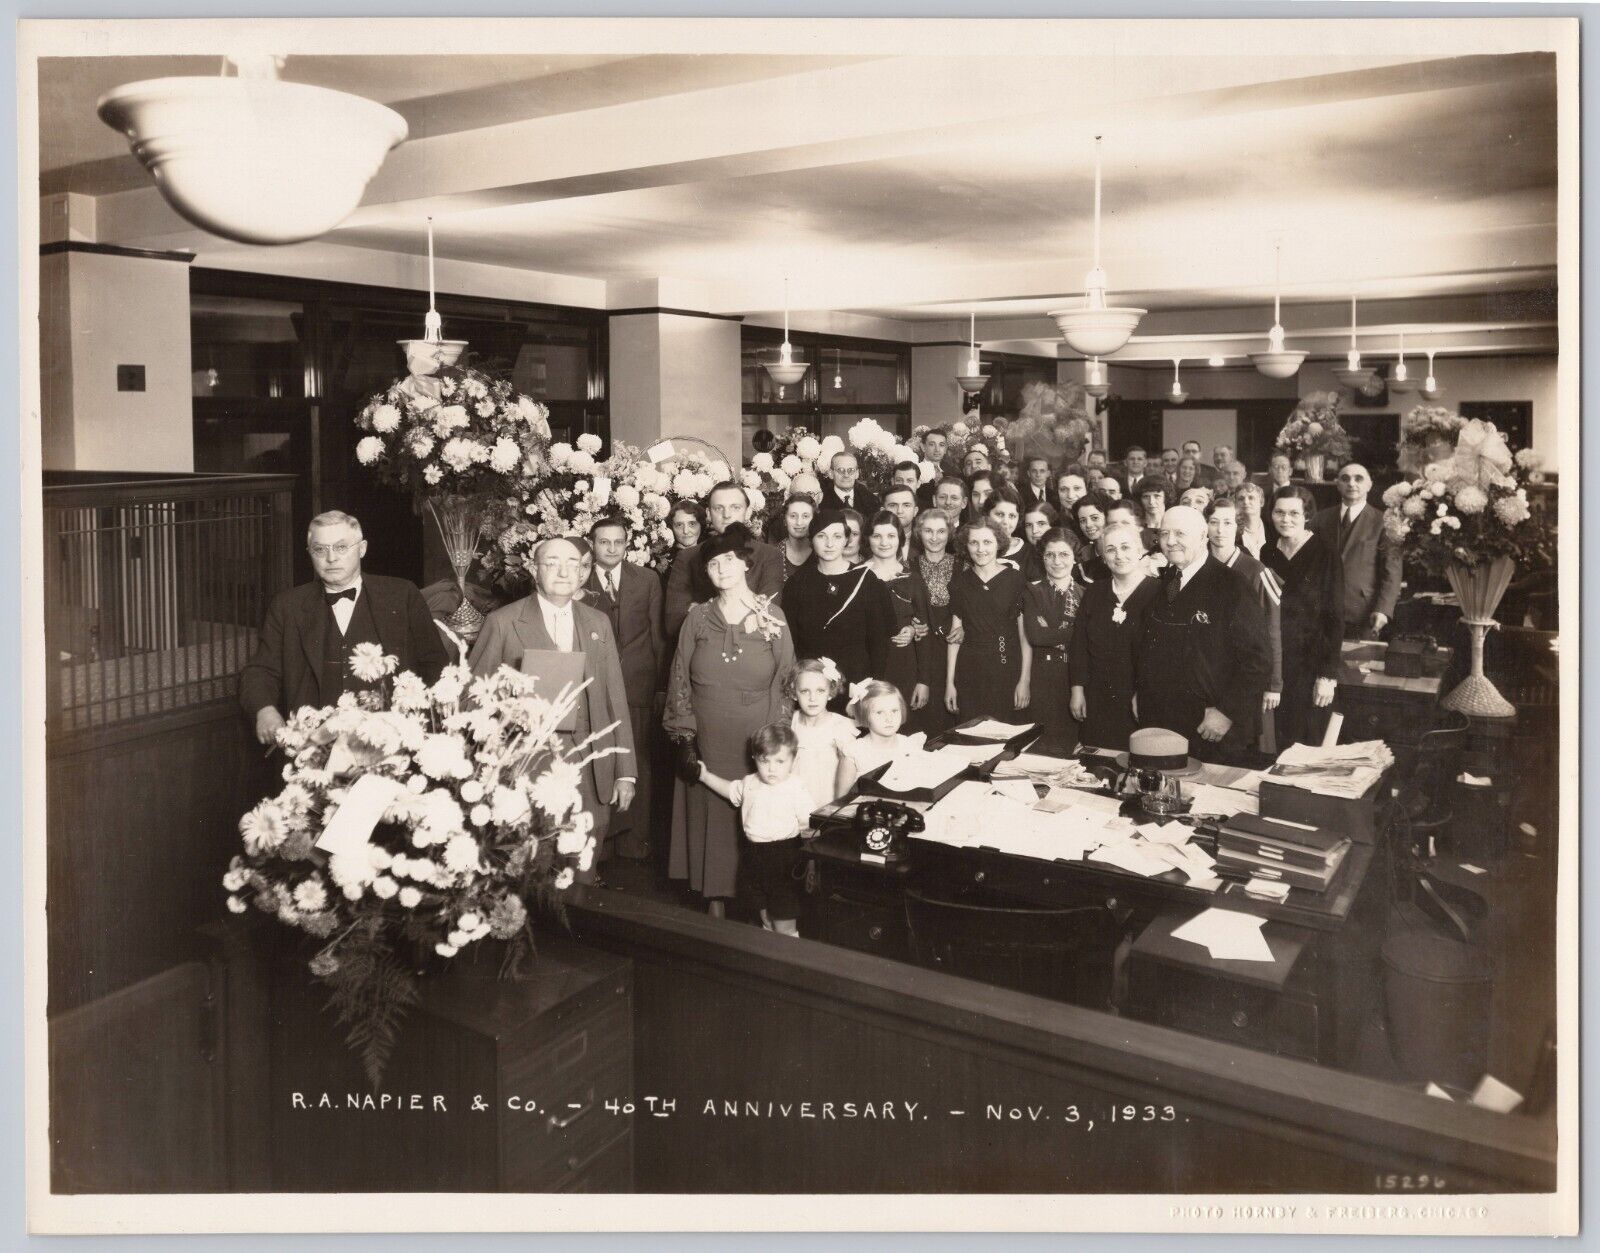 1933 R.A. Napier & Co. 40th Anniversary 8x10 ORIGINAL Photo Chicago, Illinois